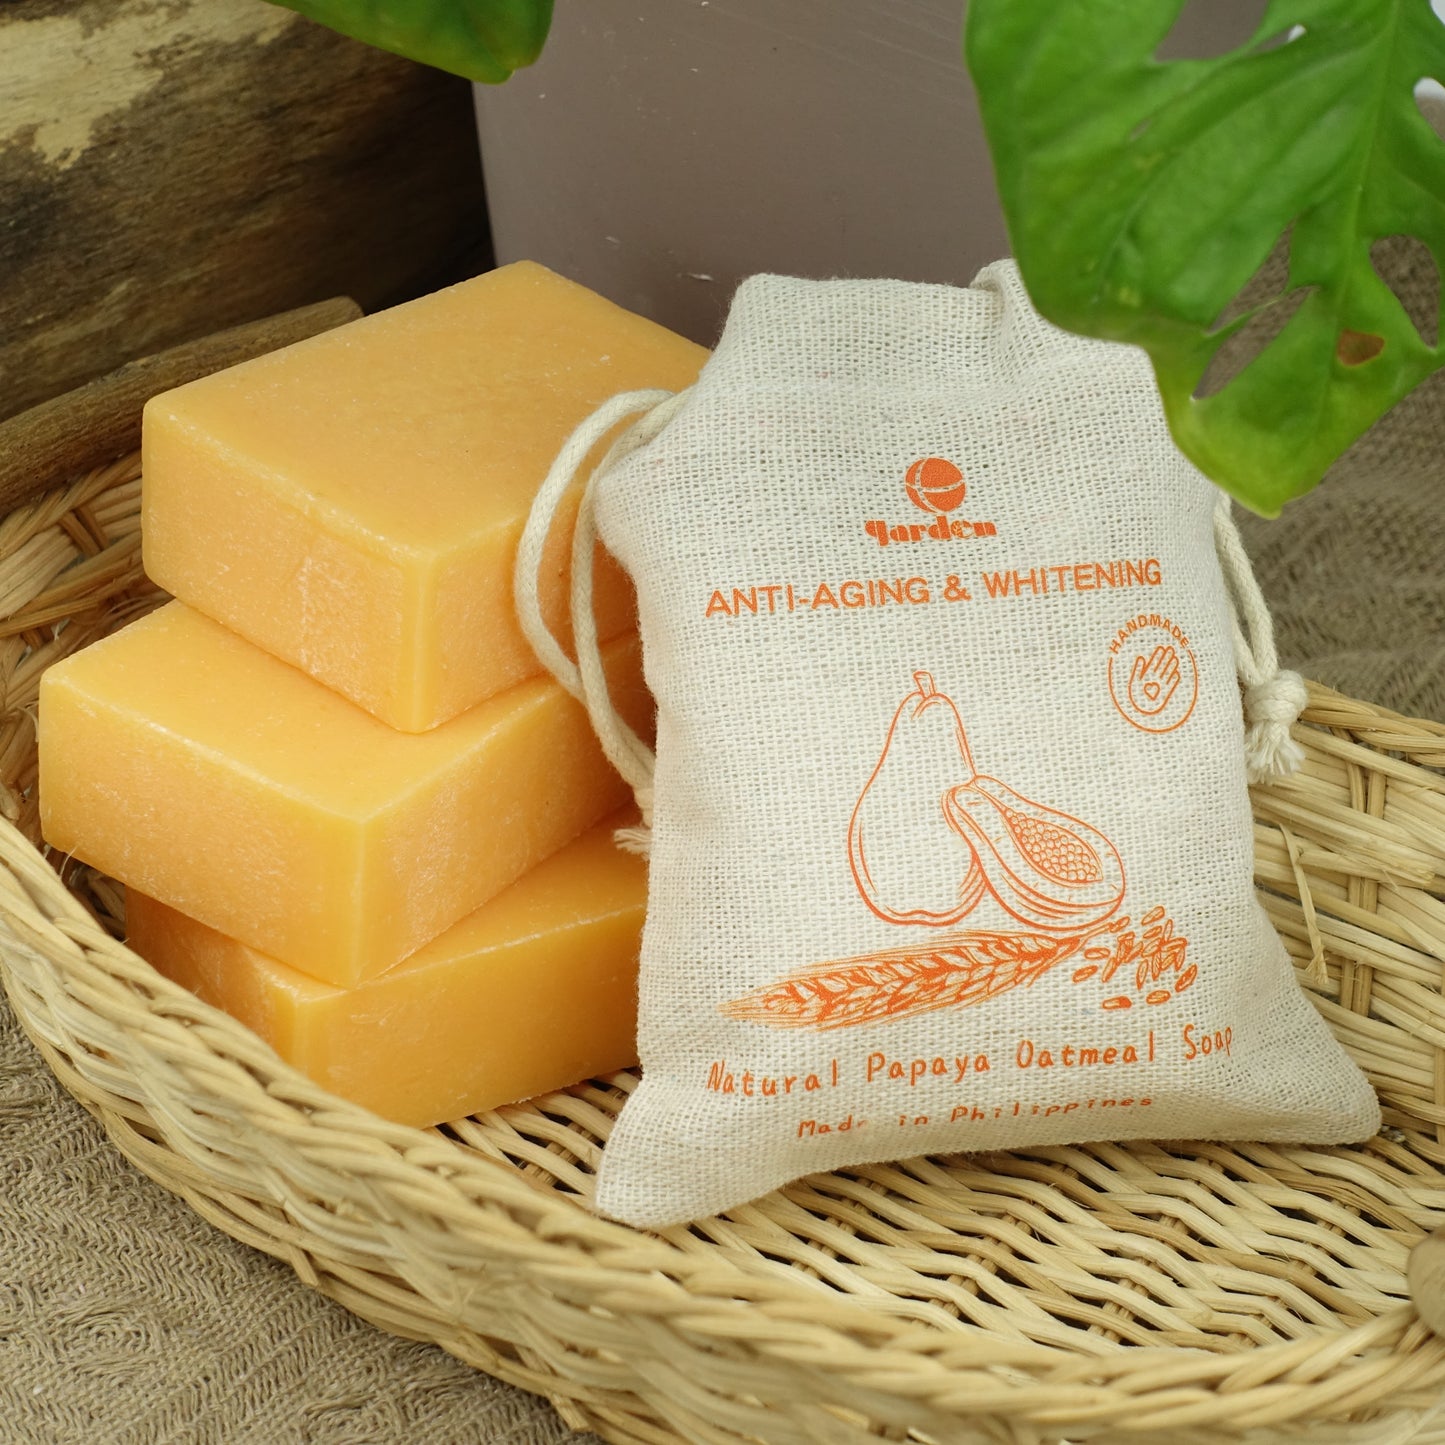 Natural Papaya Oatmeal Soap